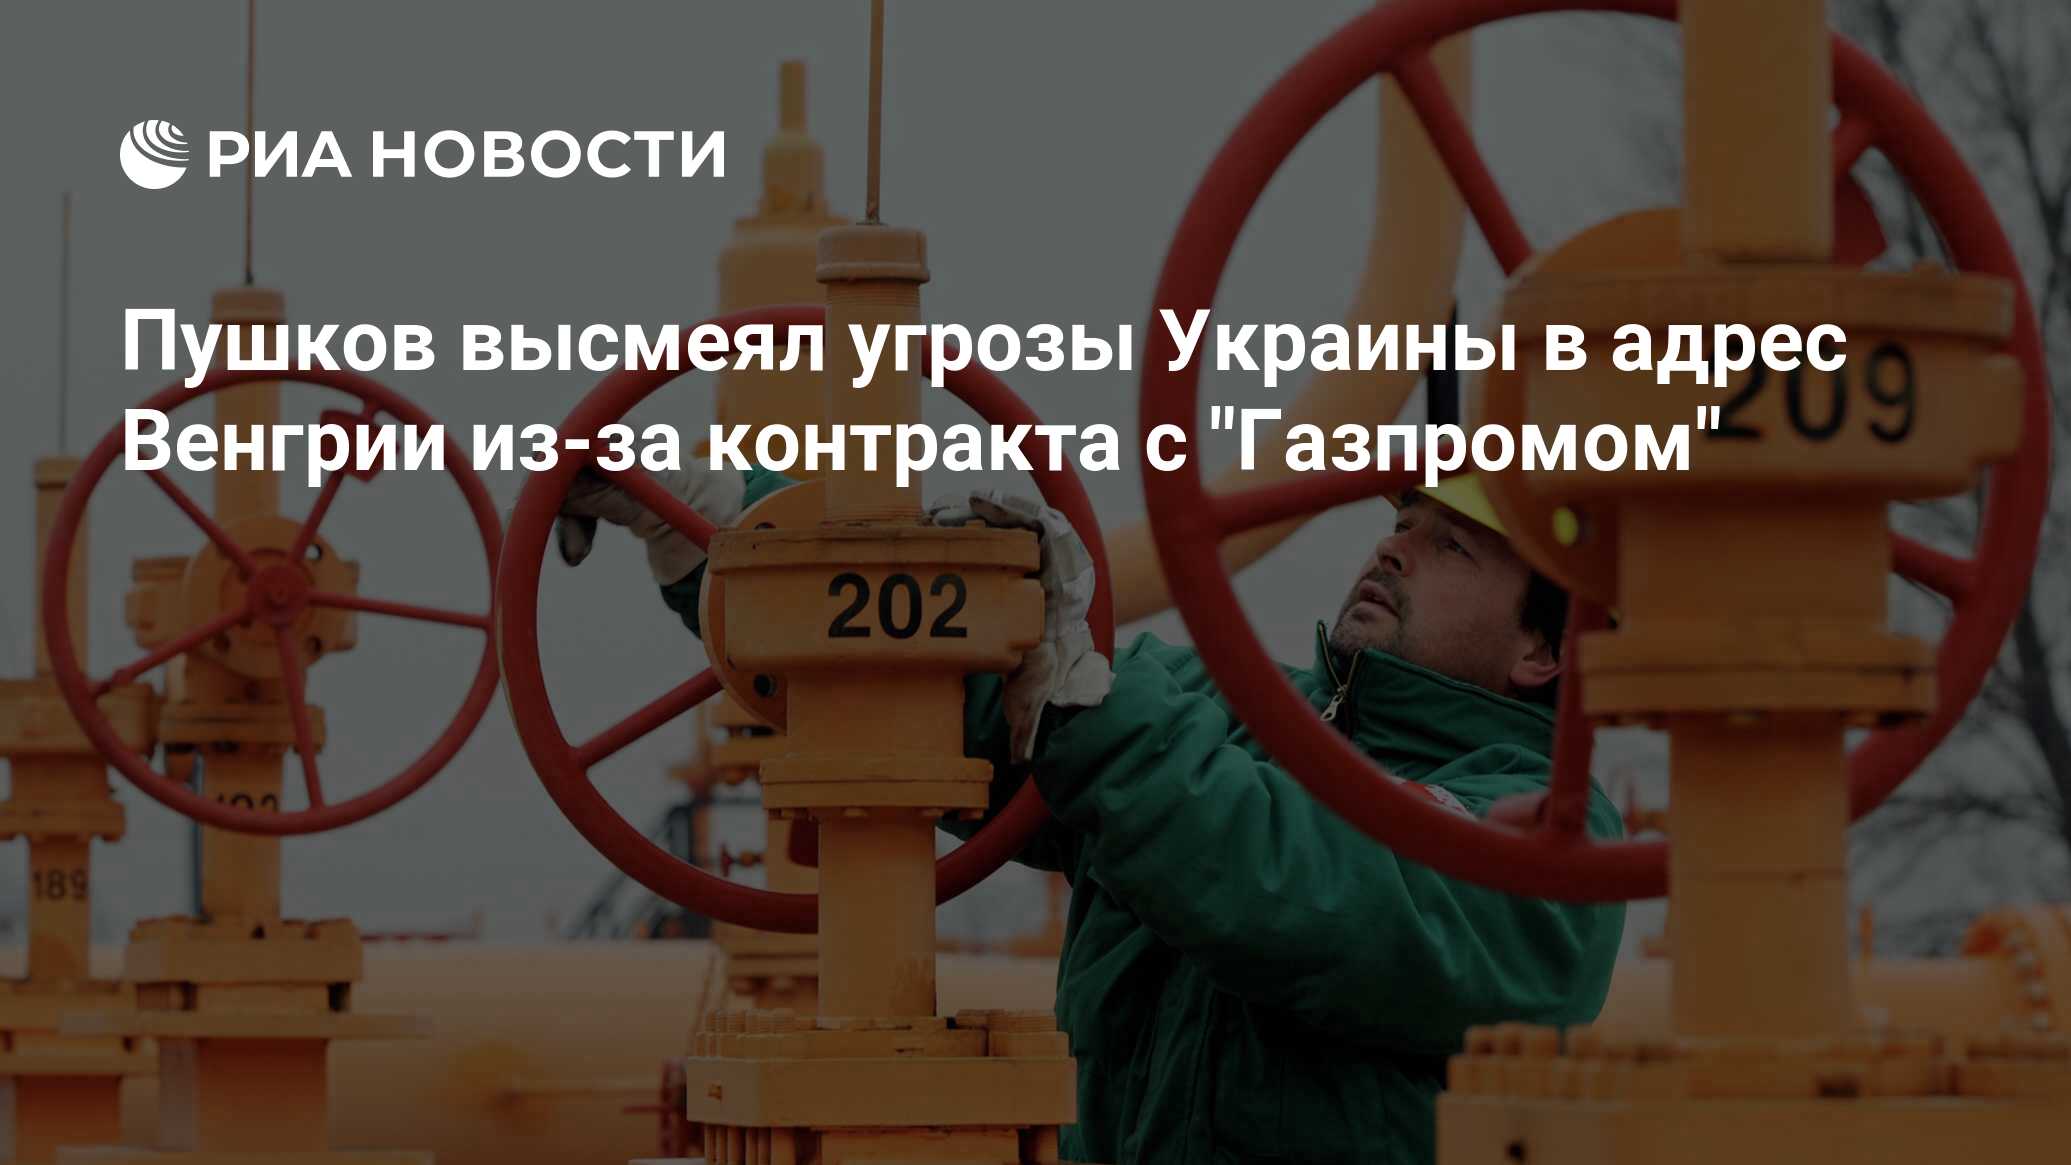 Пушков высмеял угрозы Украины в адрес Венгрии из-за контракта с "Газпромом"